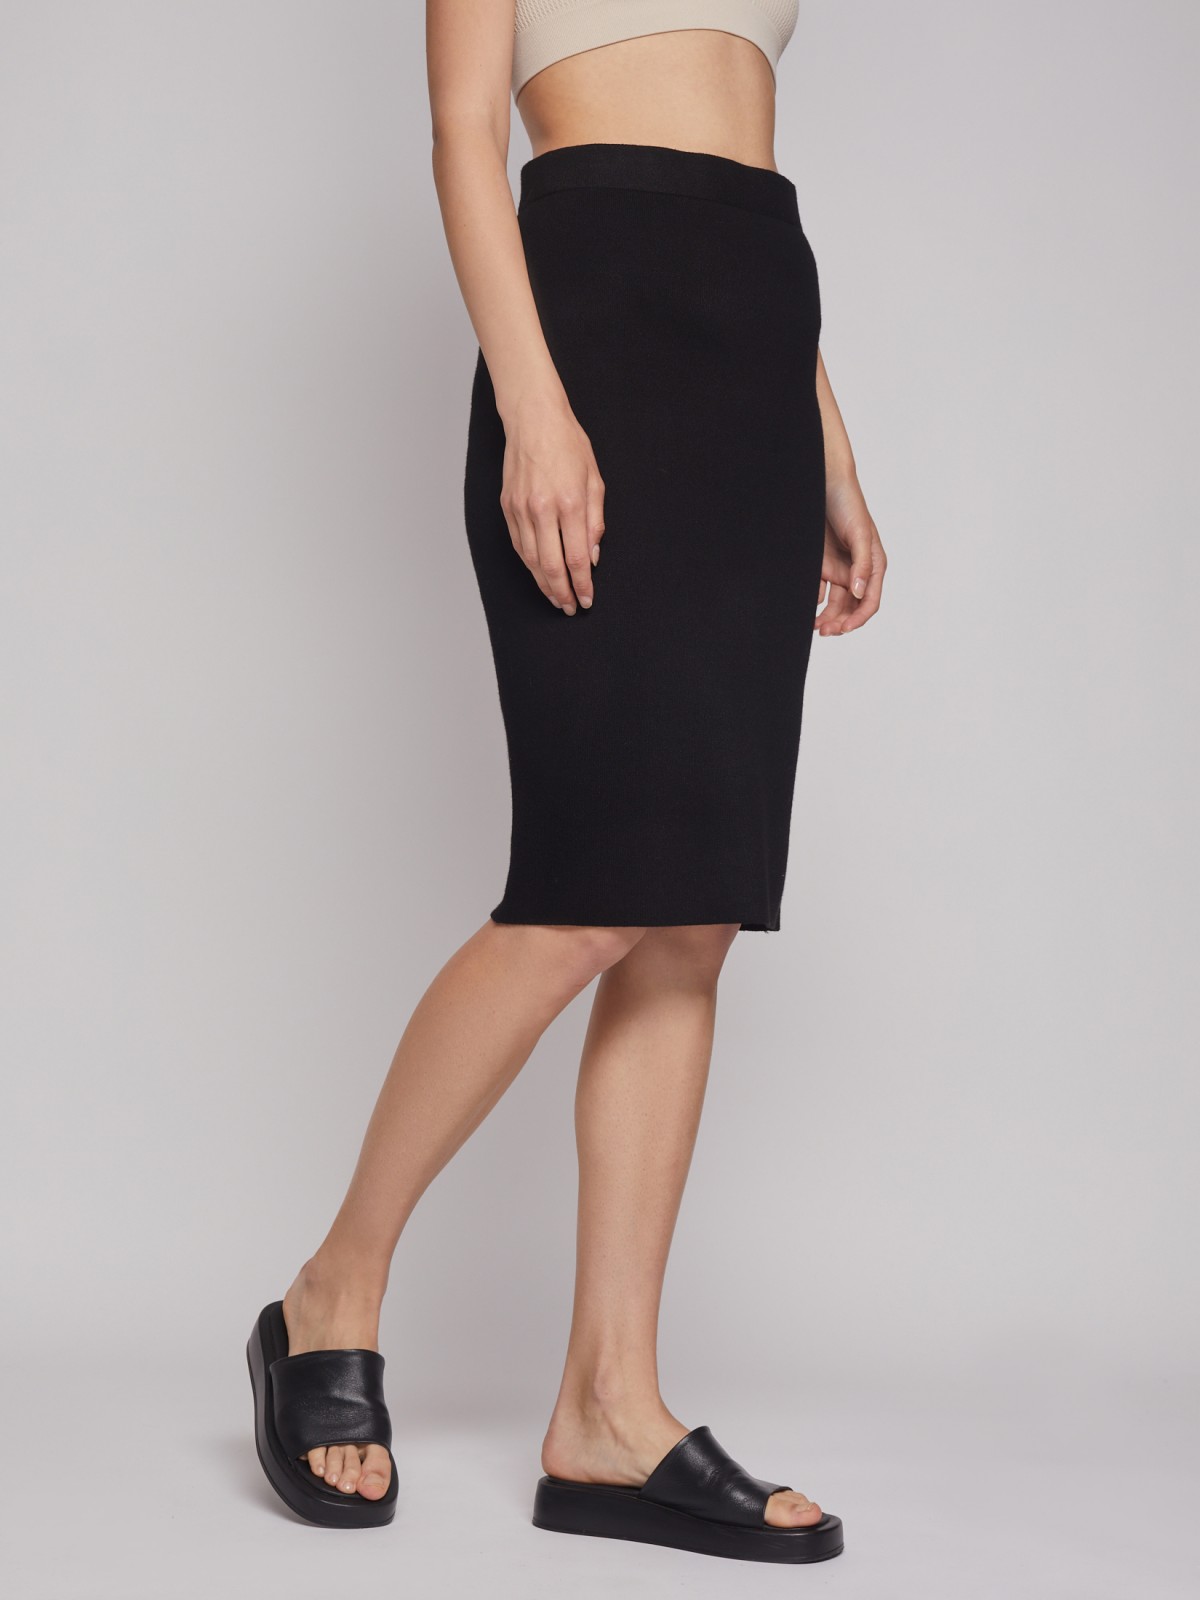 Трикотажные юбки на резинке (33 фото)– комфортные и элегантные модели | Мода от sunnyhair.ru